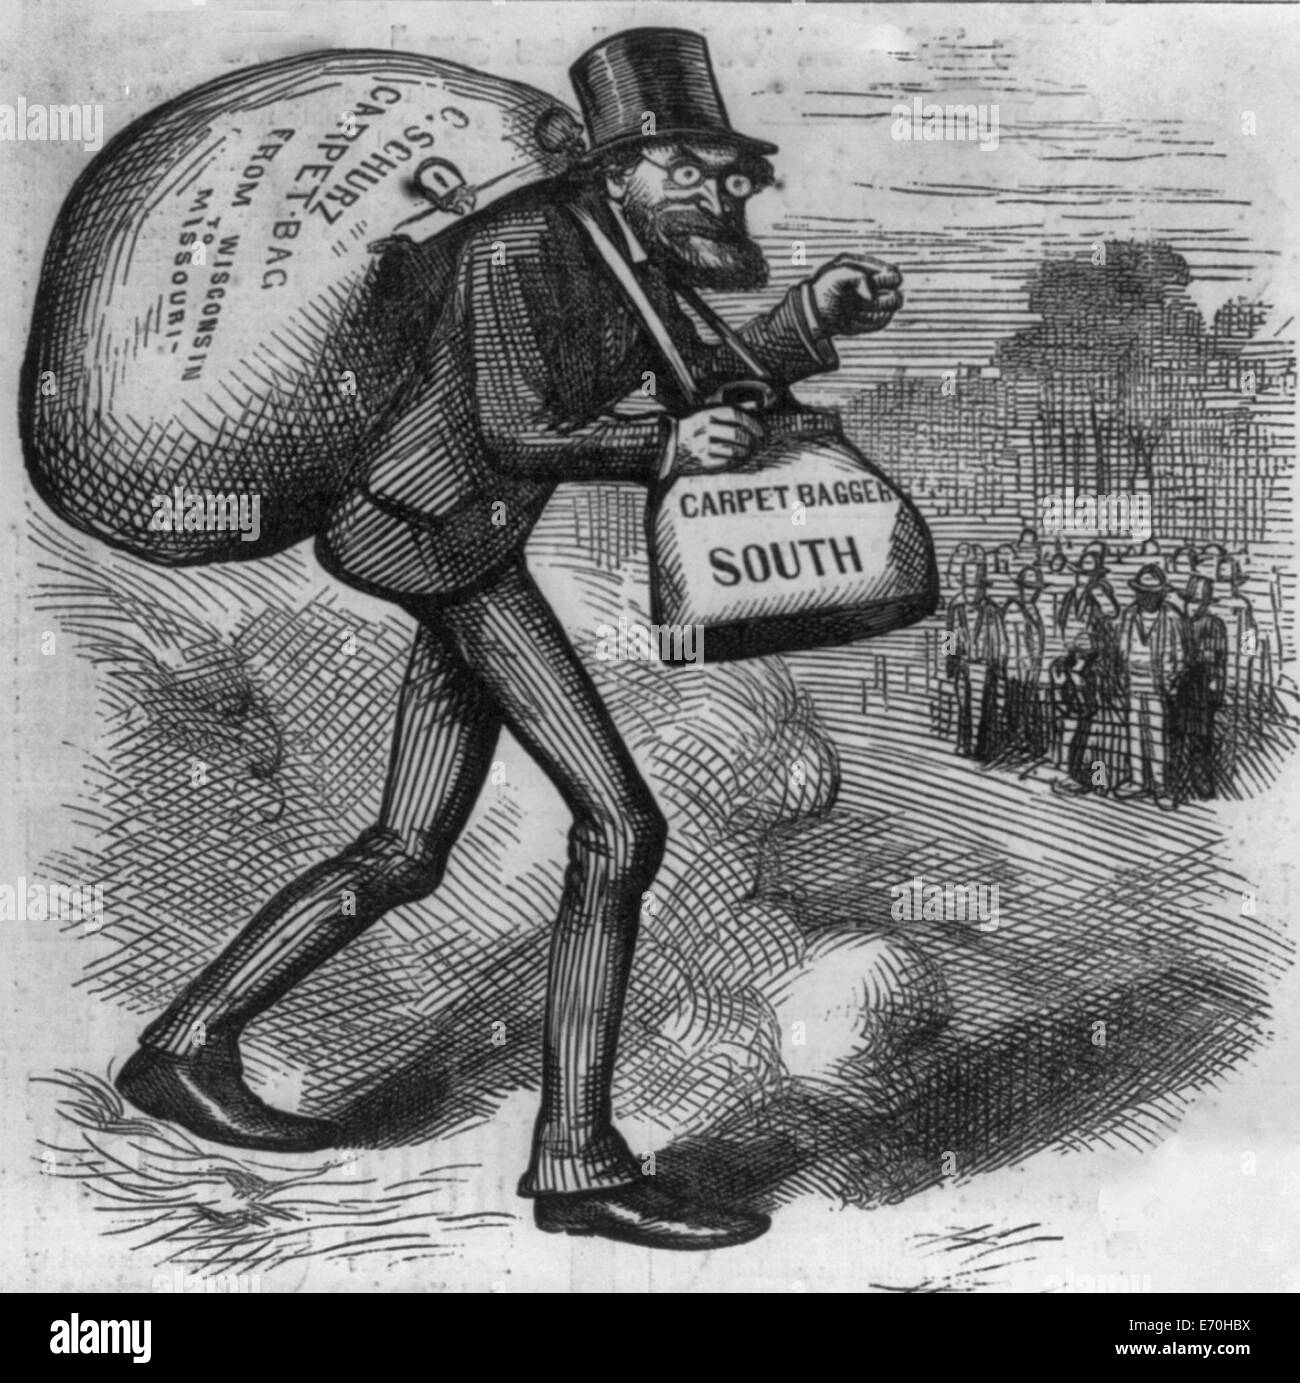 L'homme avec le tapis sacs - Caricature de Carl Schurz transporter des sacs étiquetés, 'carpet bag' et 'carpet bagger sud.' USA La Reconstruction, 1872 Banque D'Images